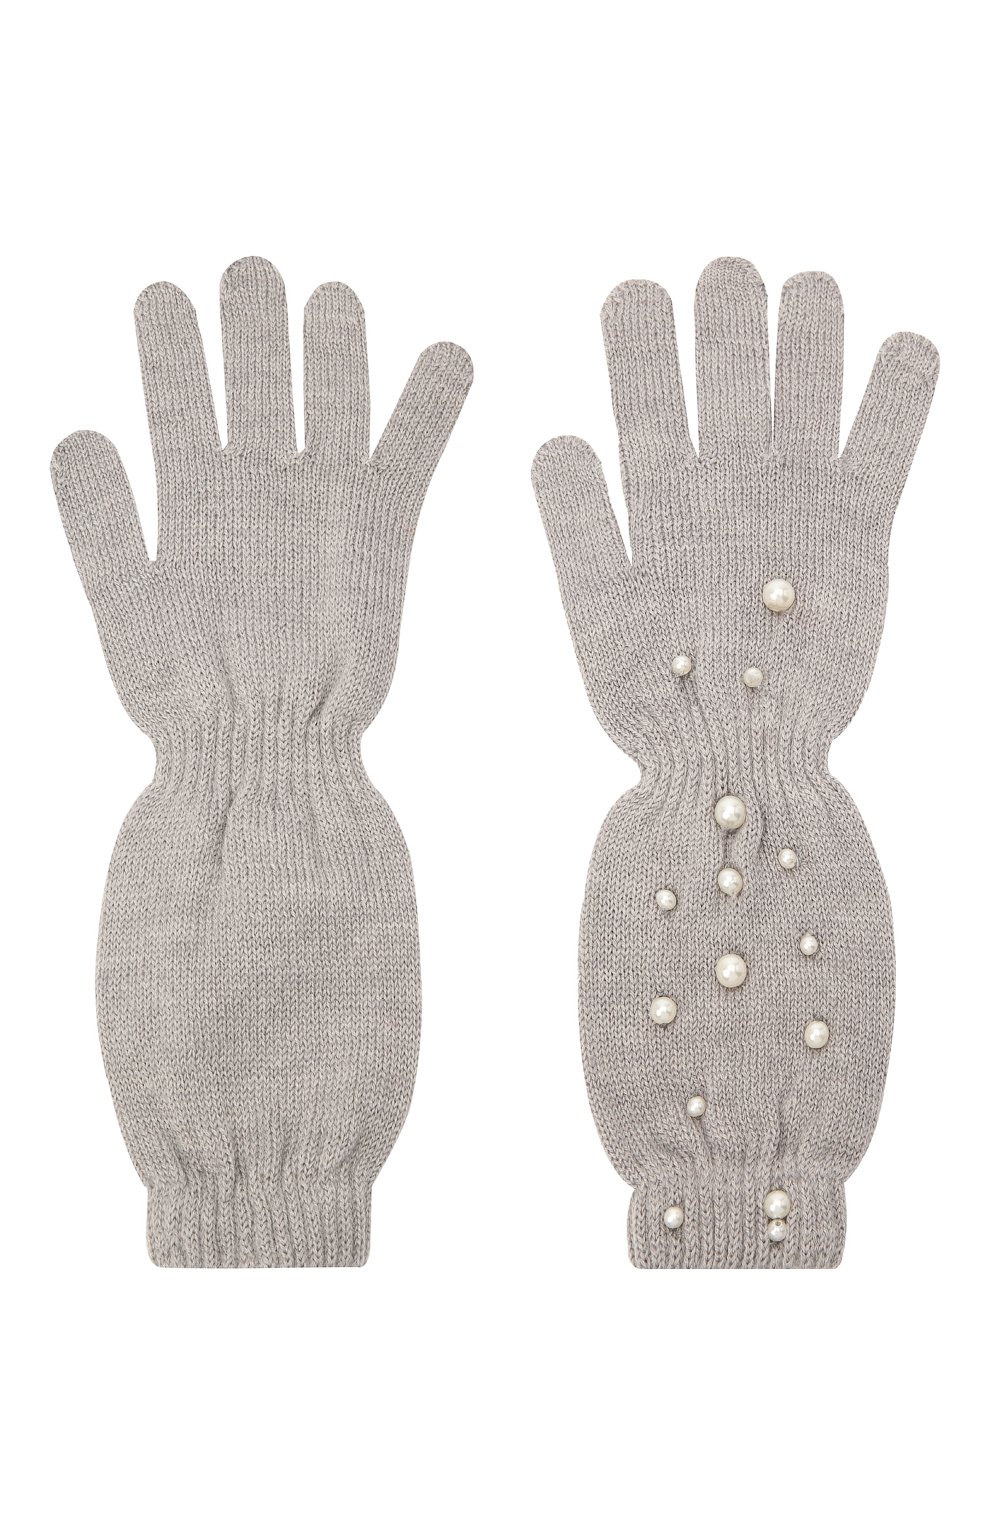 Шерстяные перчатки Monnalisa 796016 Фото 2